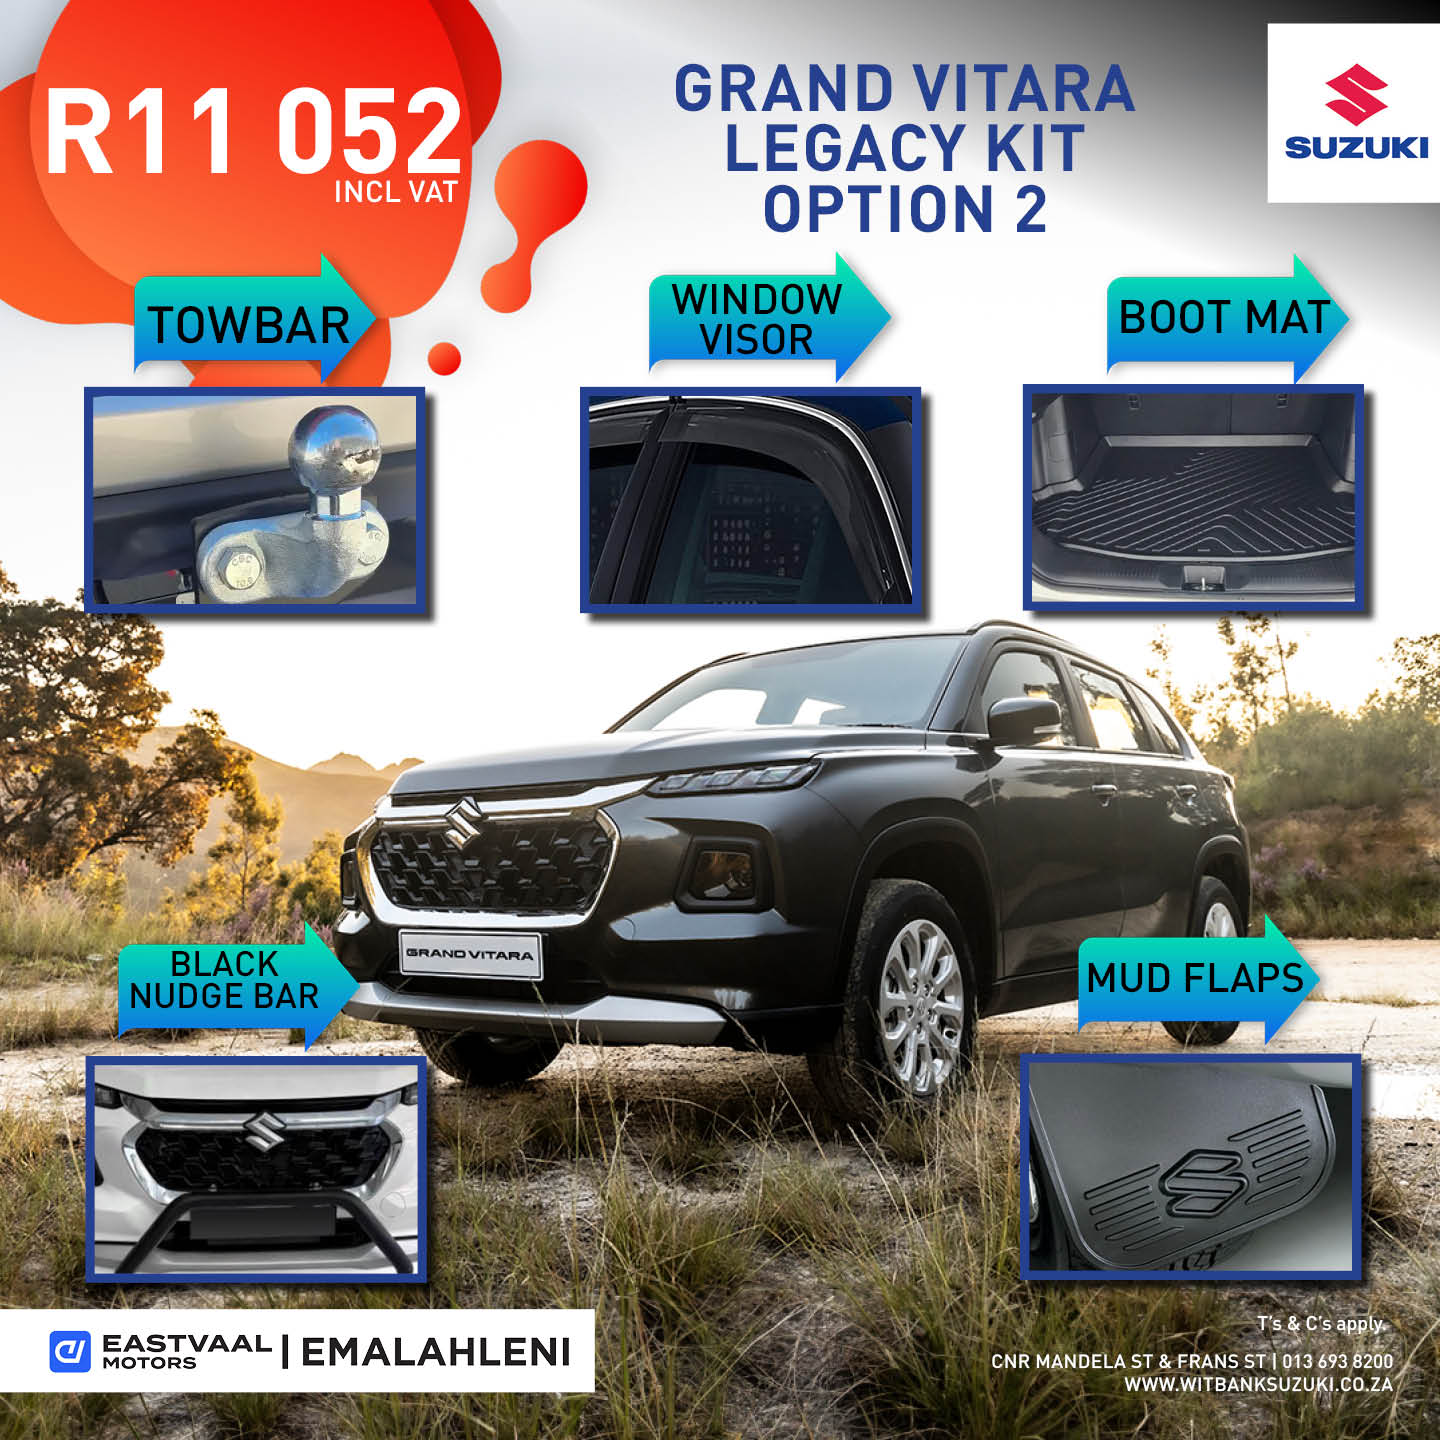 Grand Vitara Legacy Kit – Option 2 image from Eastvaal Motors